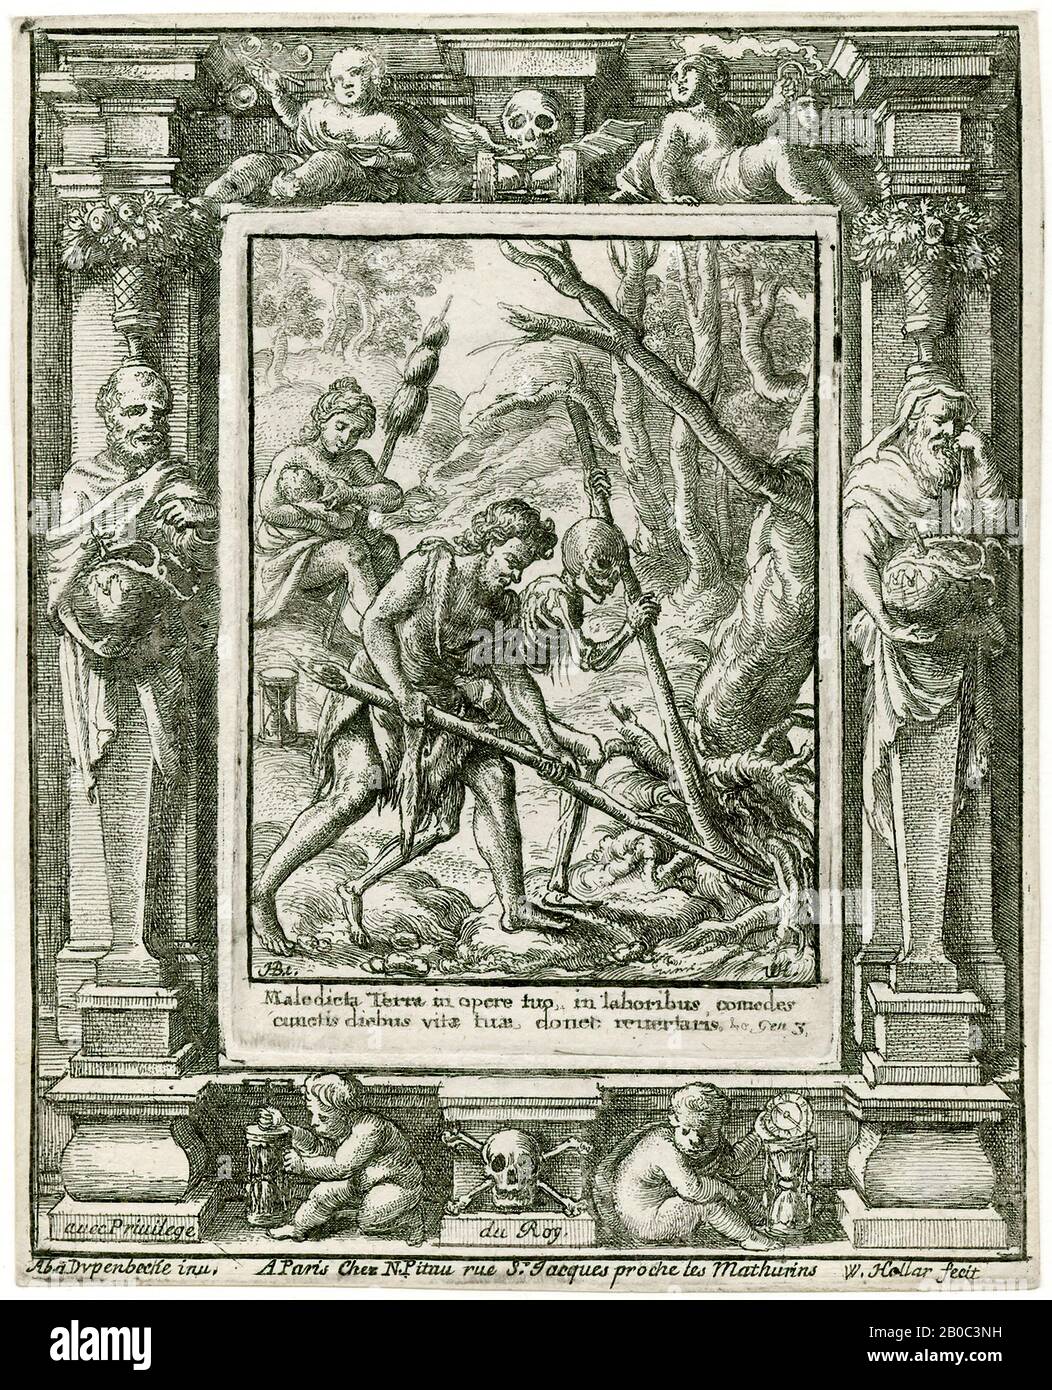 Wenceslaus Hollar, Paraíso perdido (De la serie: La Danza de la muerte, después de Hans Holbein el Joven), 1651, grabado en papel de color crema, 4 9/16 pulg. X 3 11/16 pulg. (11.59 cm x 9.37 cm Foto de stock